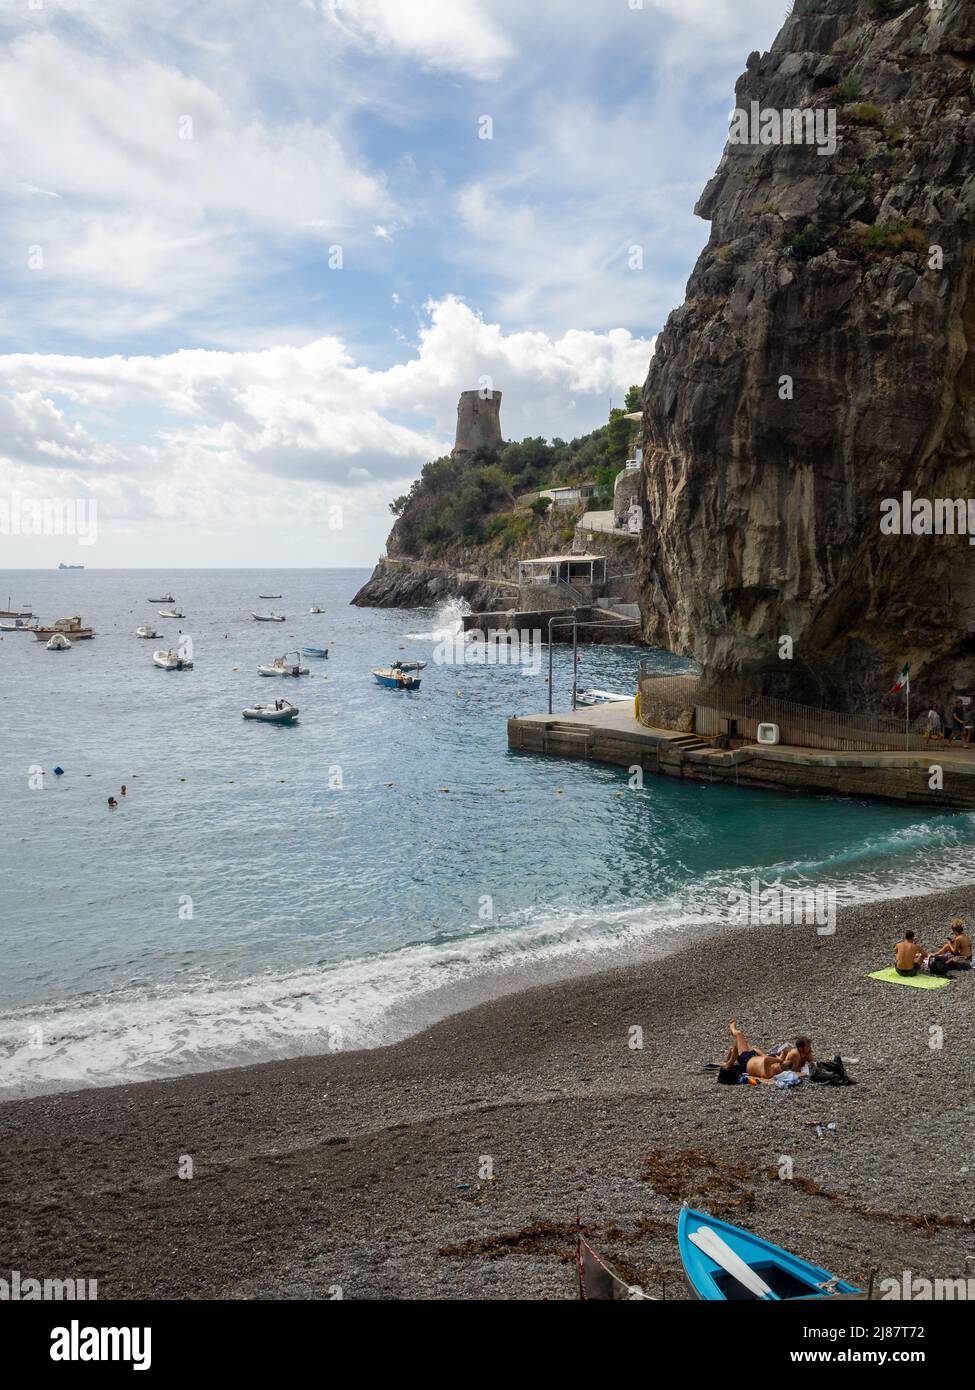 Marina di Praia, Amalfi Coast Stock Photo